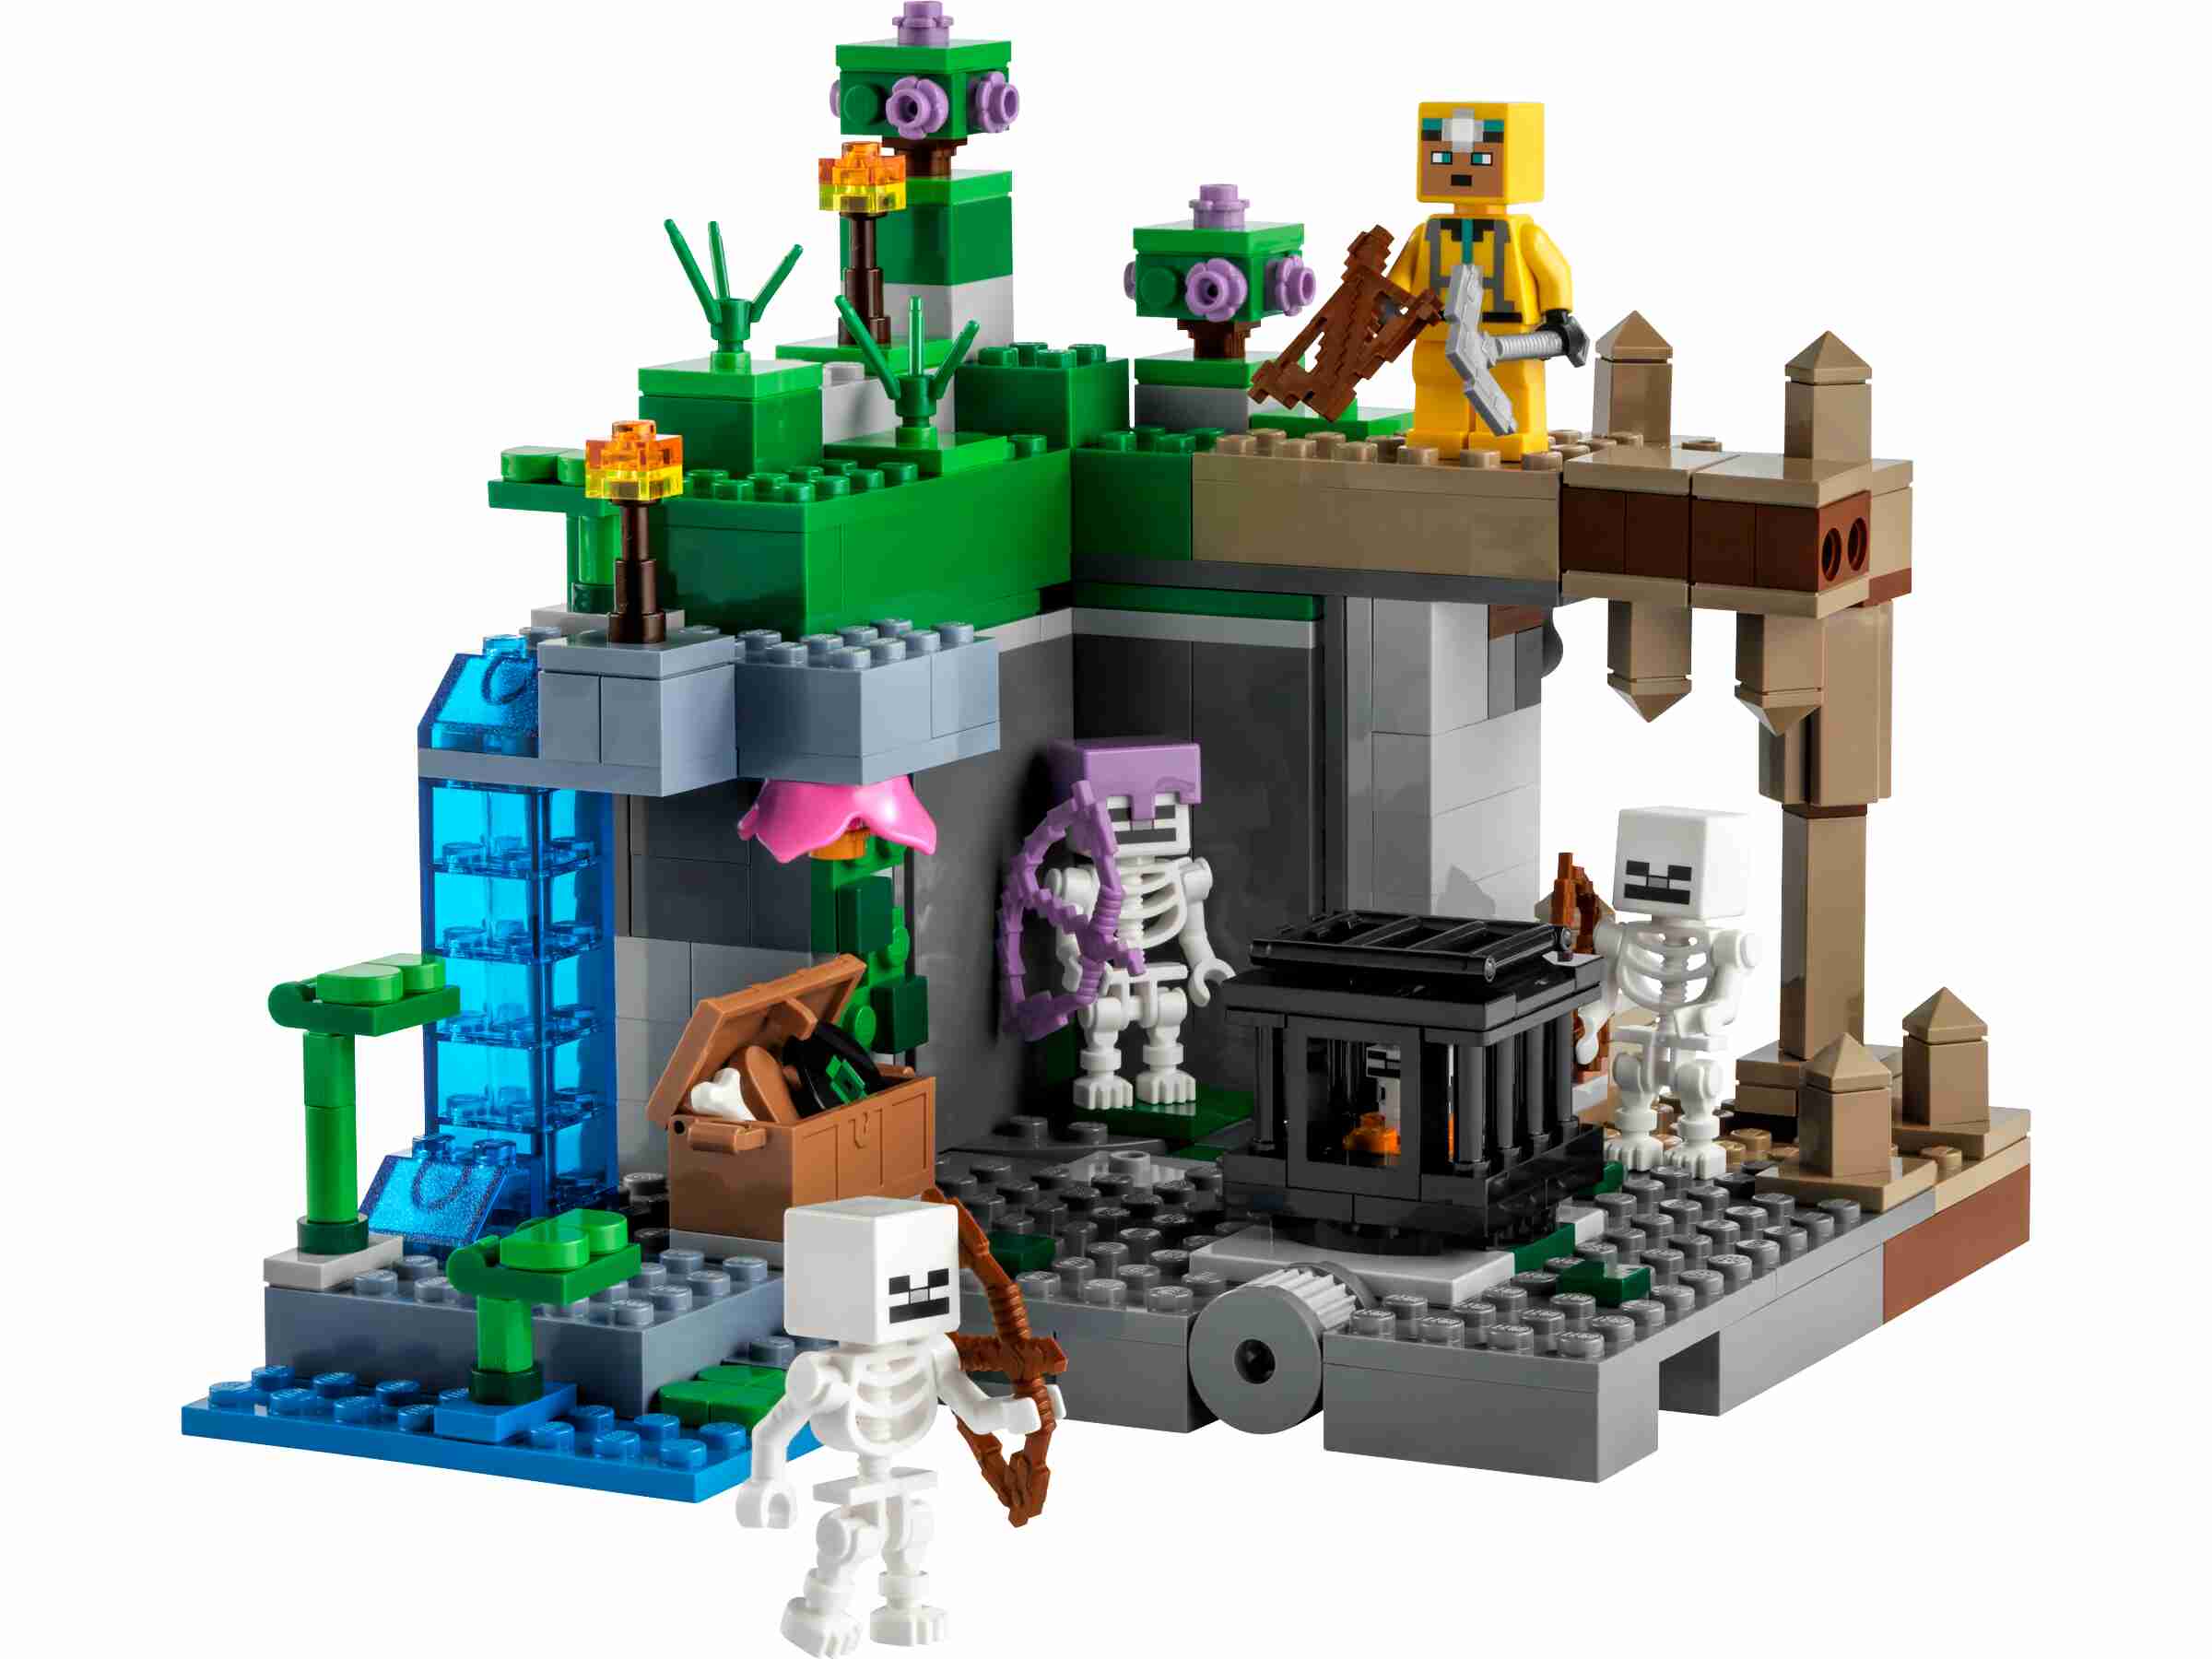 LEGO 21189 Minecraft Das Skelettverlies, Set mit Höhlen, Skelettfiguren